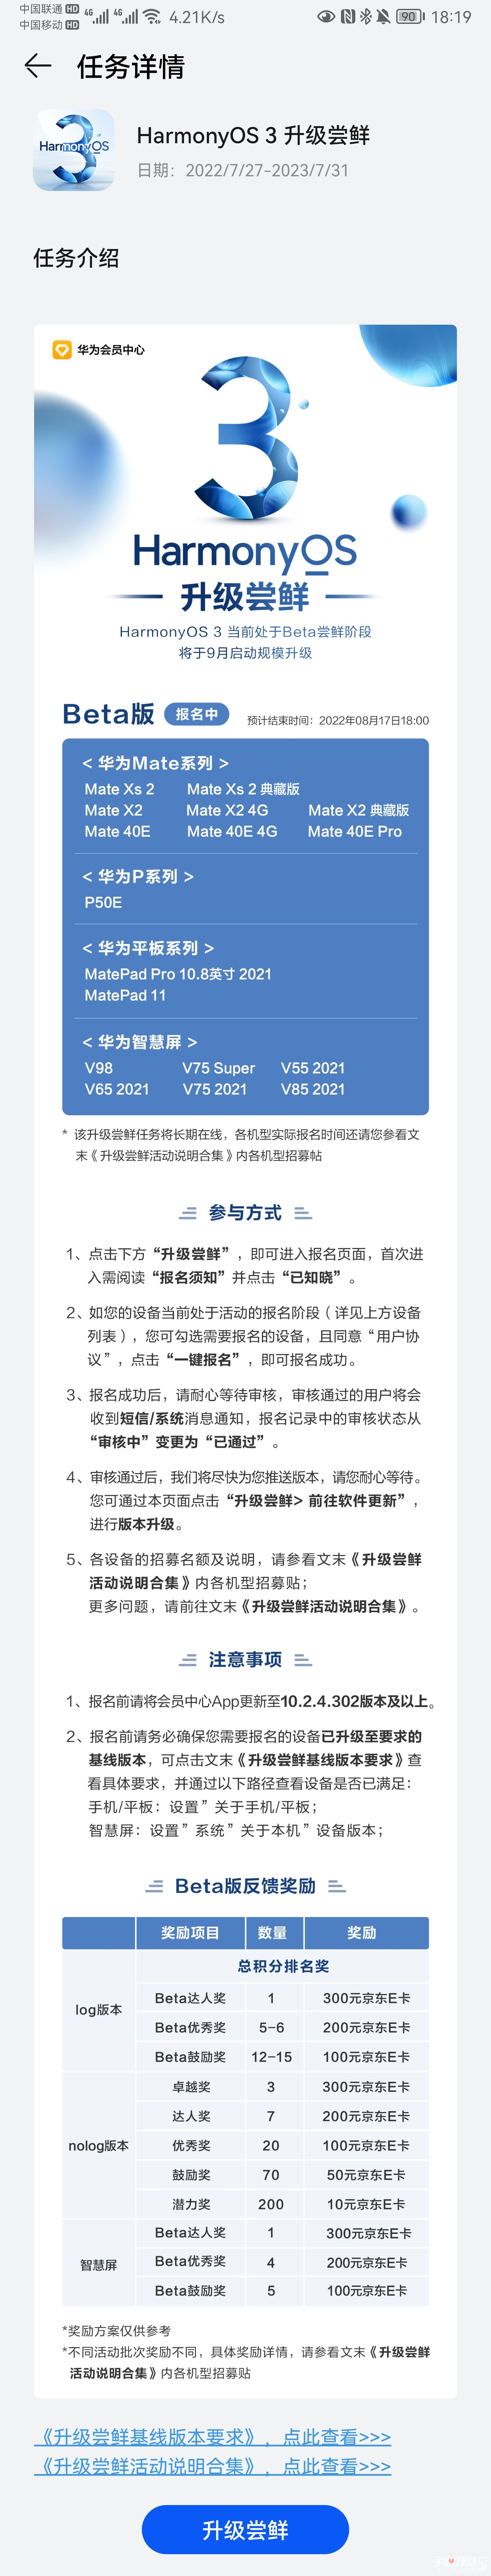 华为鸿蒙3.0第二批升级机型名单介绍